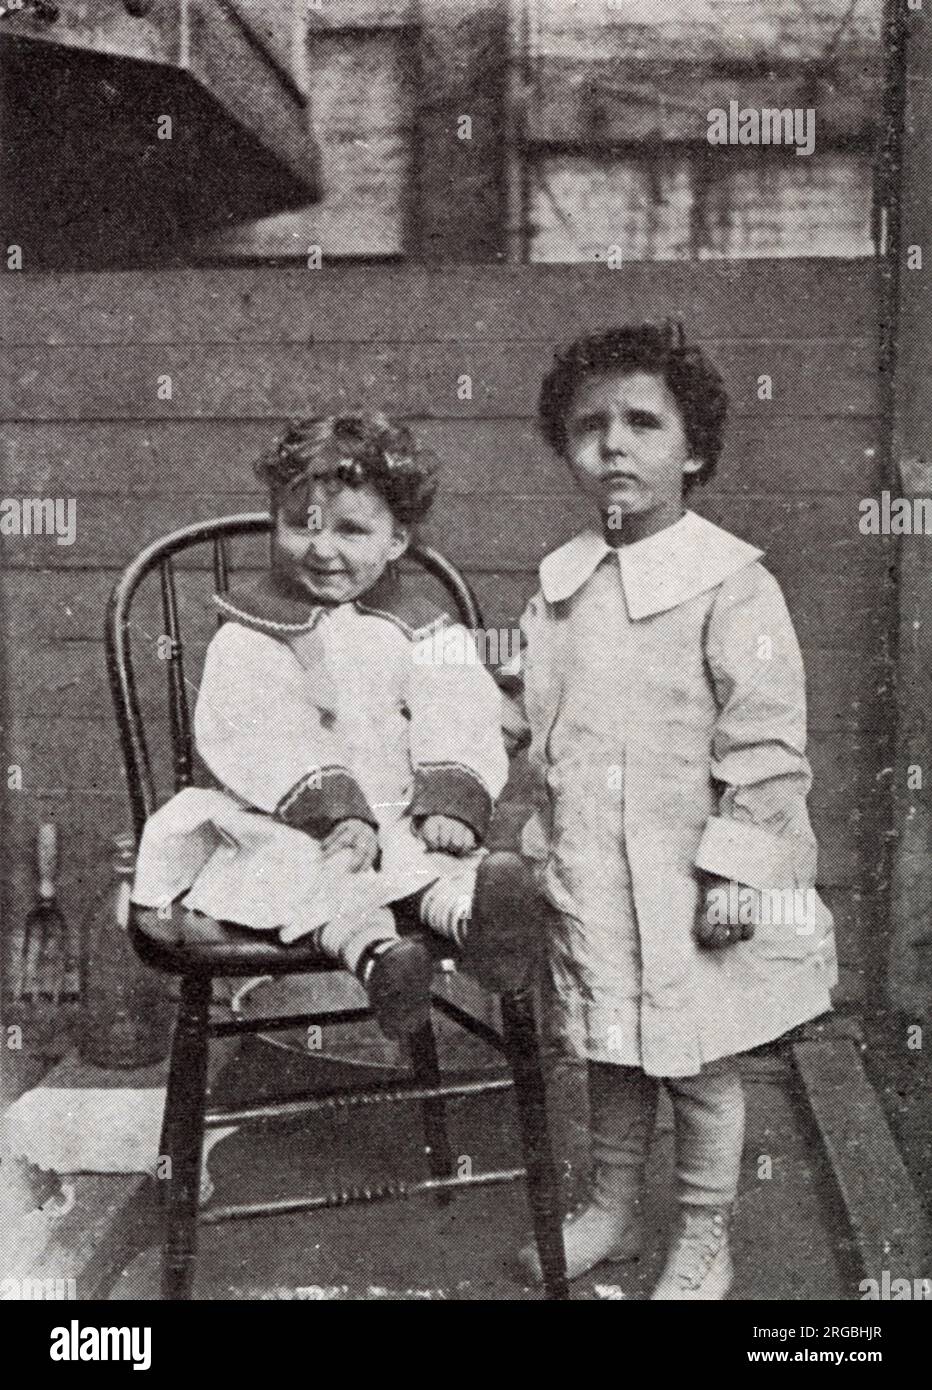 Die französischen Brüder Lolo (oder Michael) und Momon (oder Edmund) Navratil, Überlebende der Titanic-Katastrophe, die anfangs ihre Namen nicht kannten. Die Brüder heißen Lolo und Louis auf diesem Foto. Stockfoto